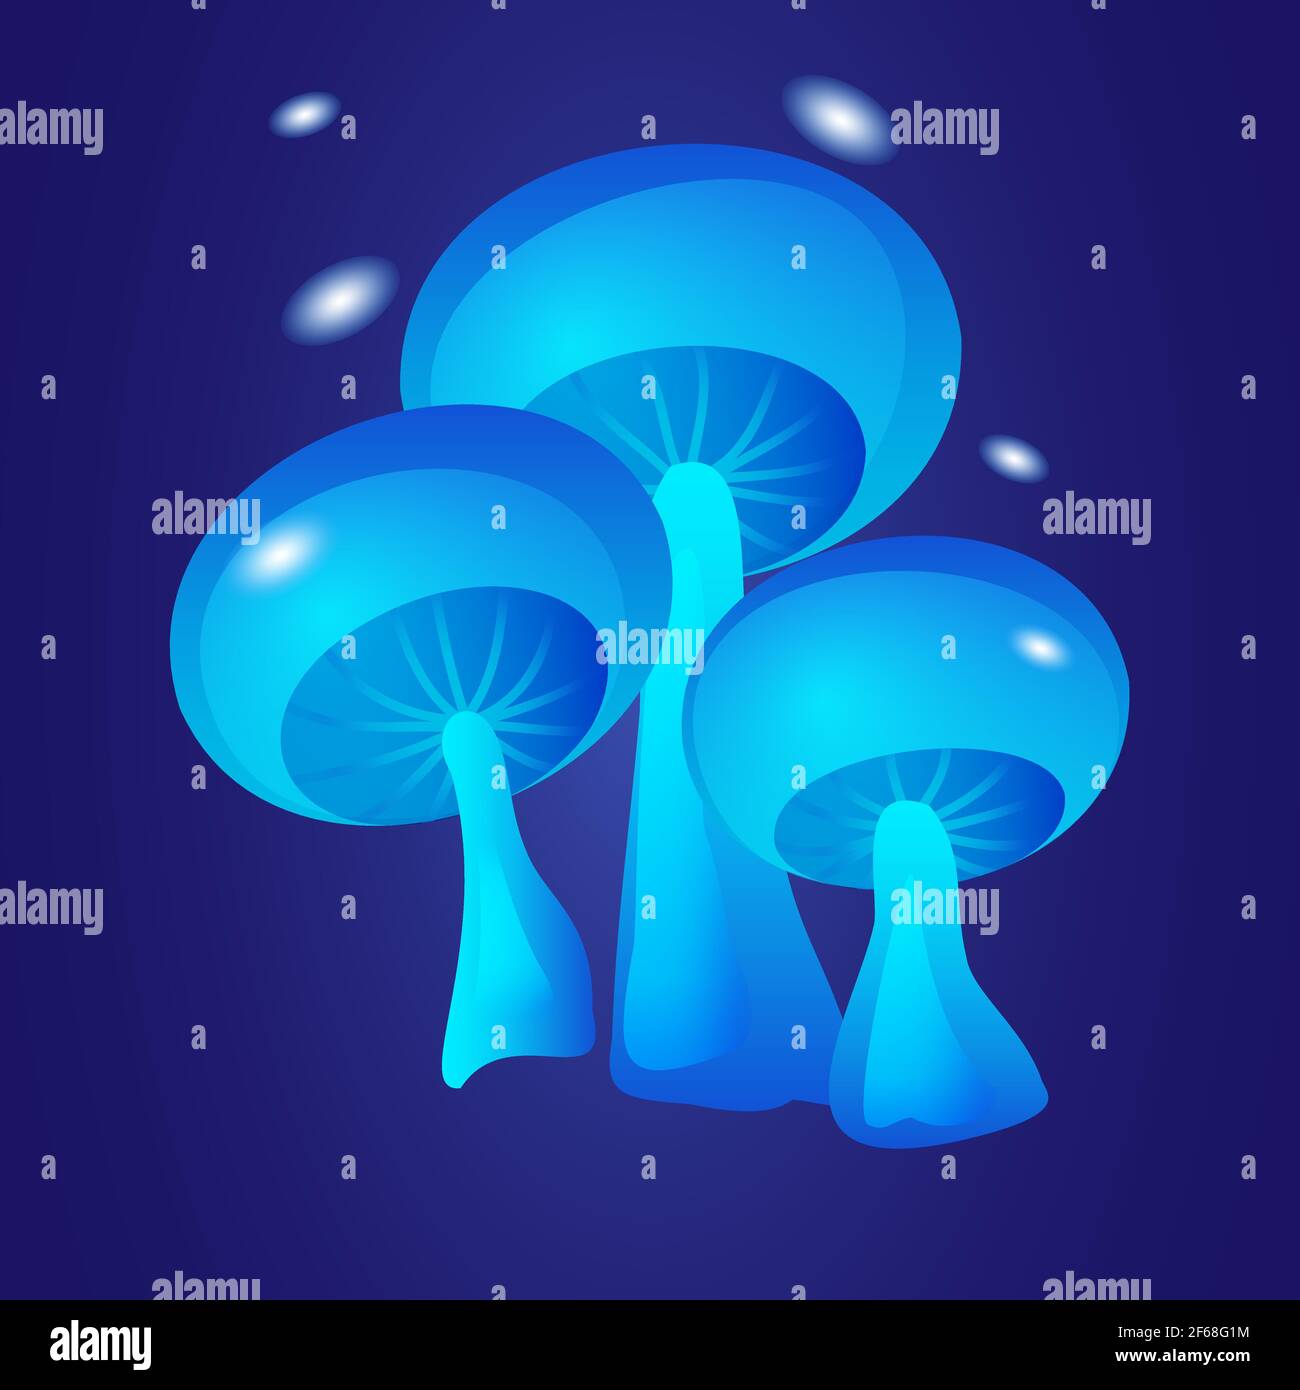 Fantastique champignons bleus lumineux sur fond sombre illustration vectorielle Illustration de Vecteur